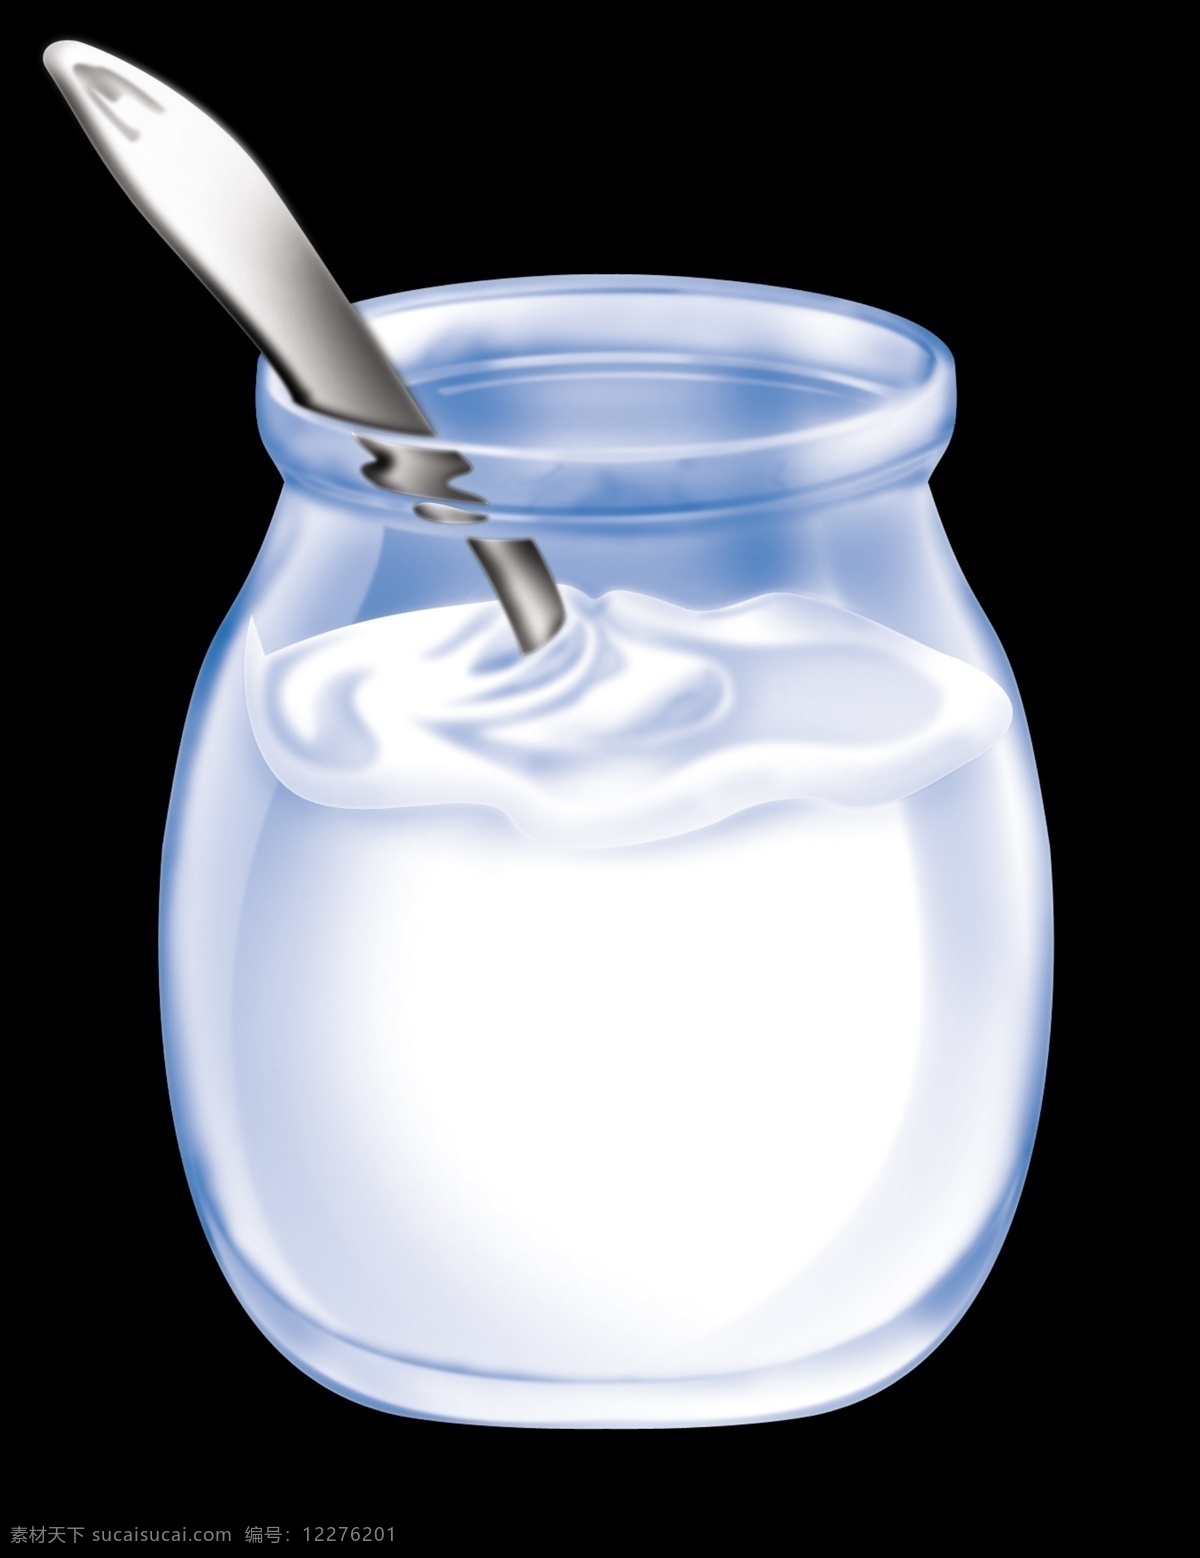 牛奶罐 牛奶 玻璃罐 汤勺 搅拌 分层图 分层 源文件库